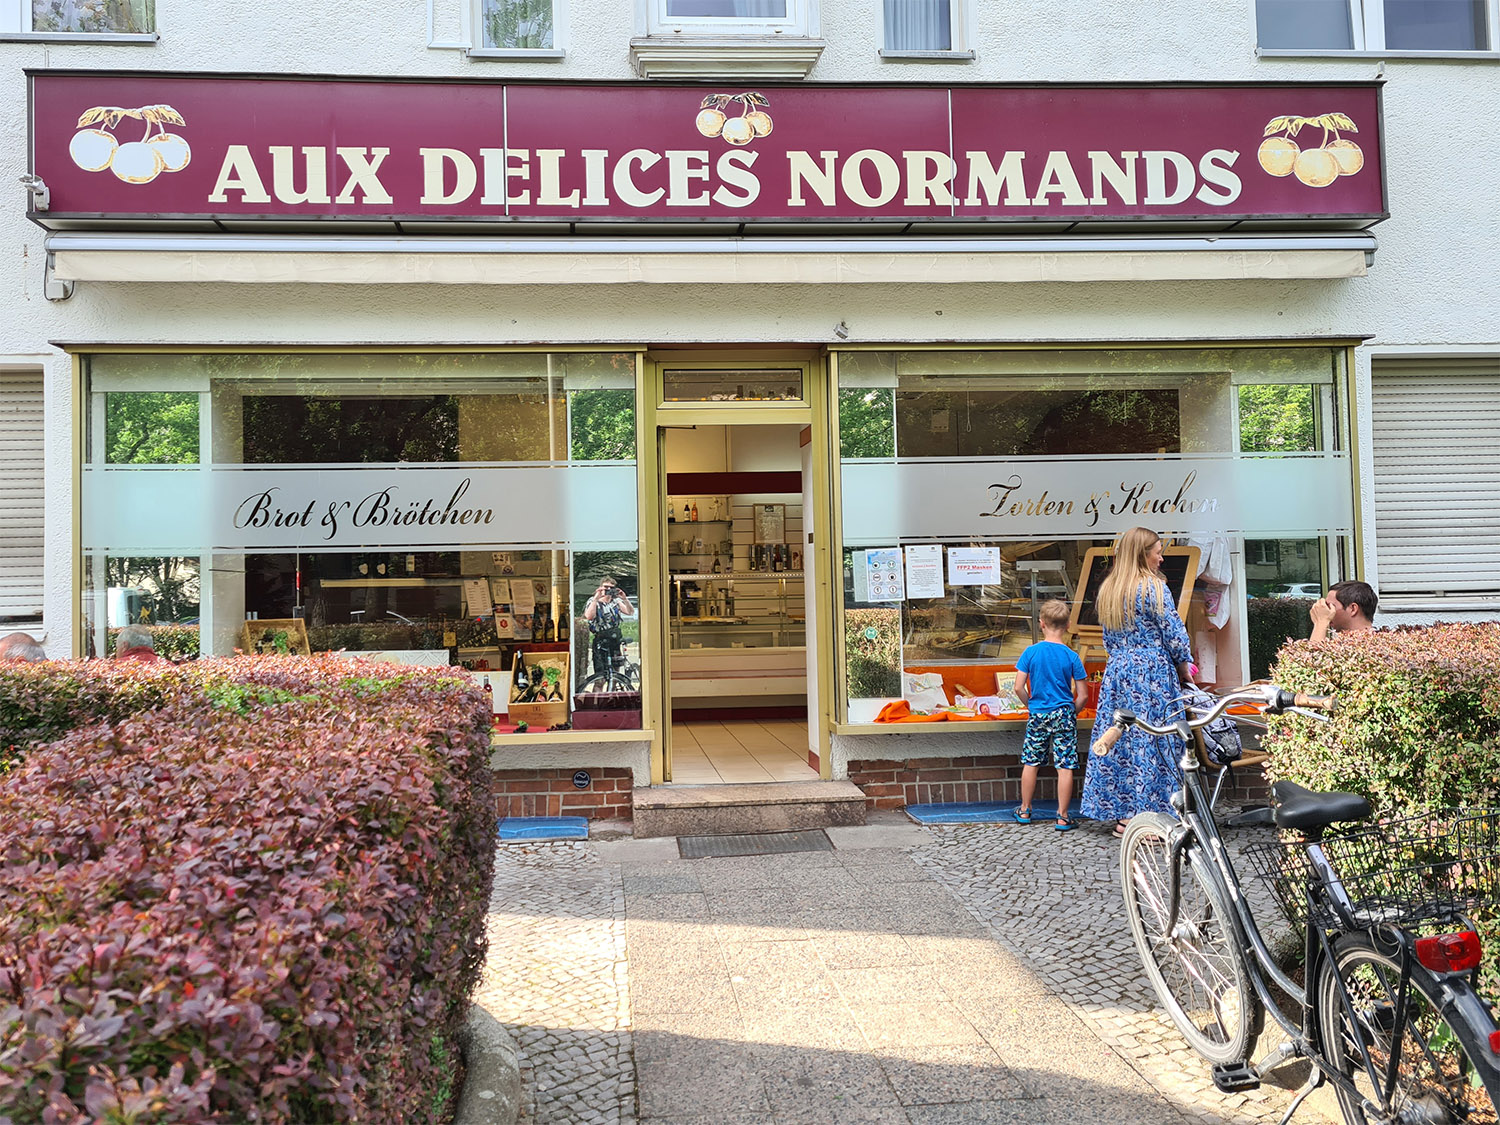 Zum Frühstück in Steglitz-Zehlendorf empfiehlt sich Aux Delices Normands mit leckeren Backwaren und Kuchen.